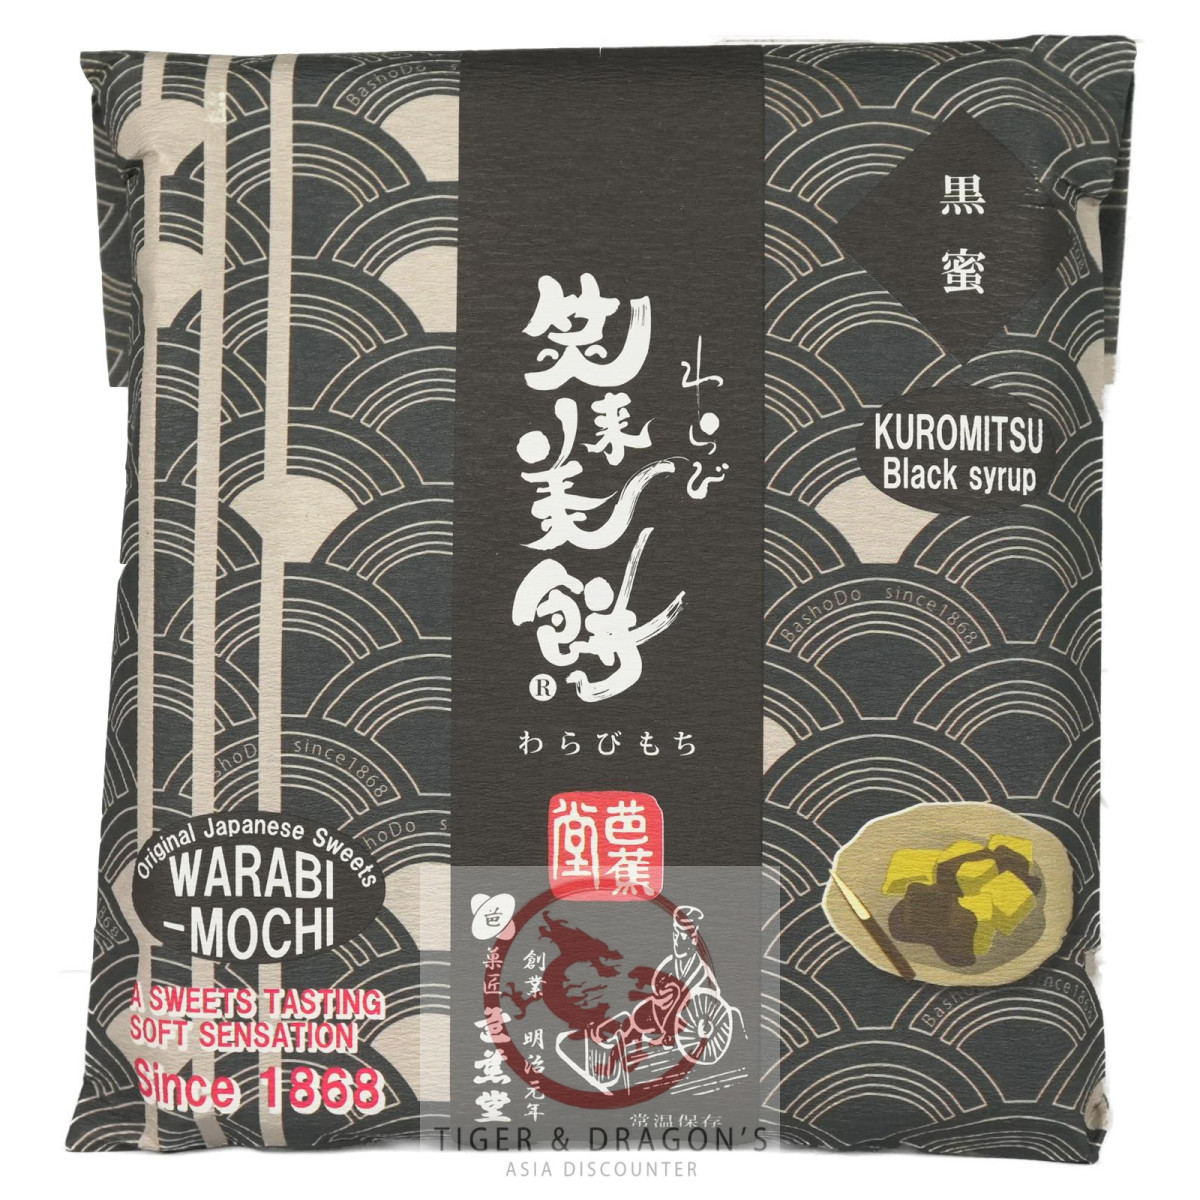 Warabi Mochi Kuromitsu Brown Sugar Syrup110g